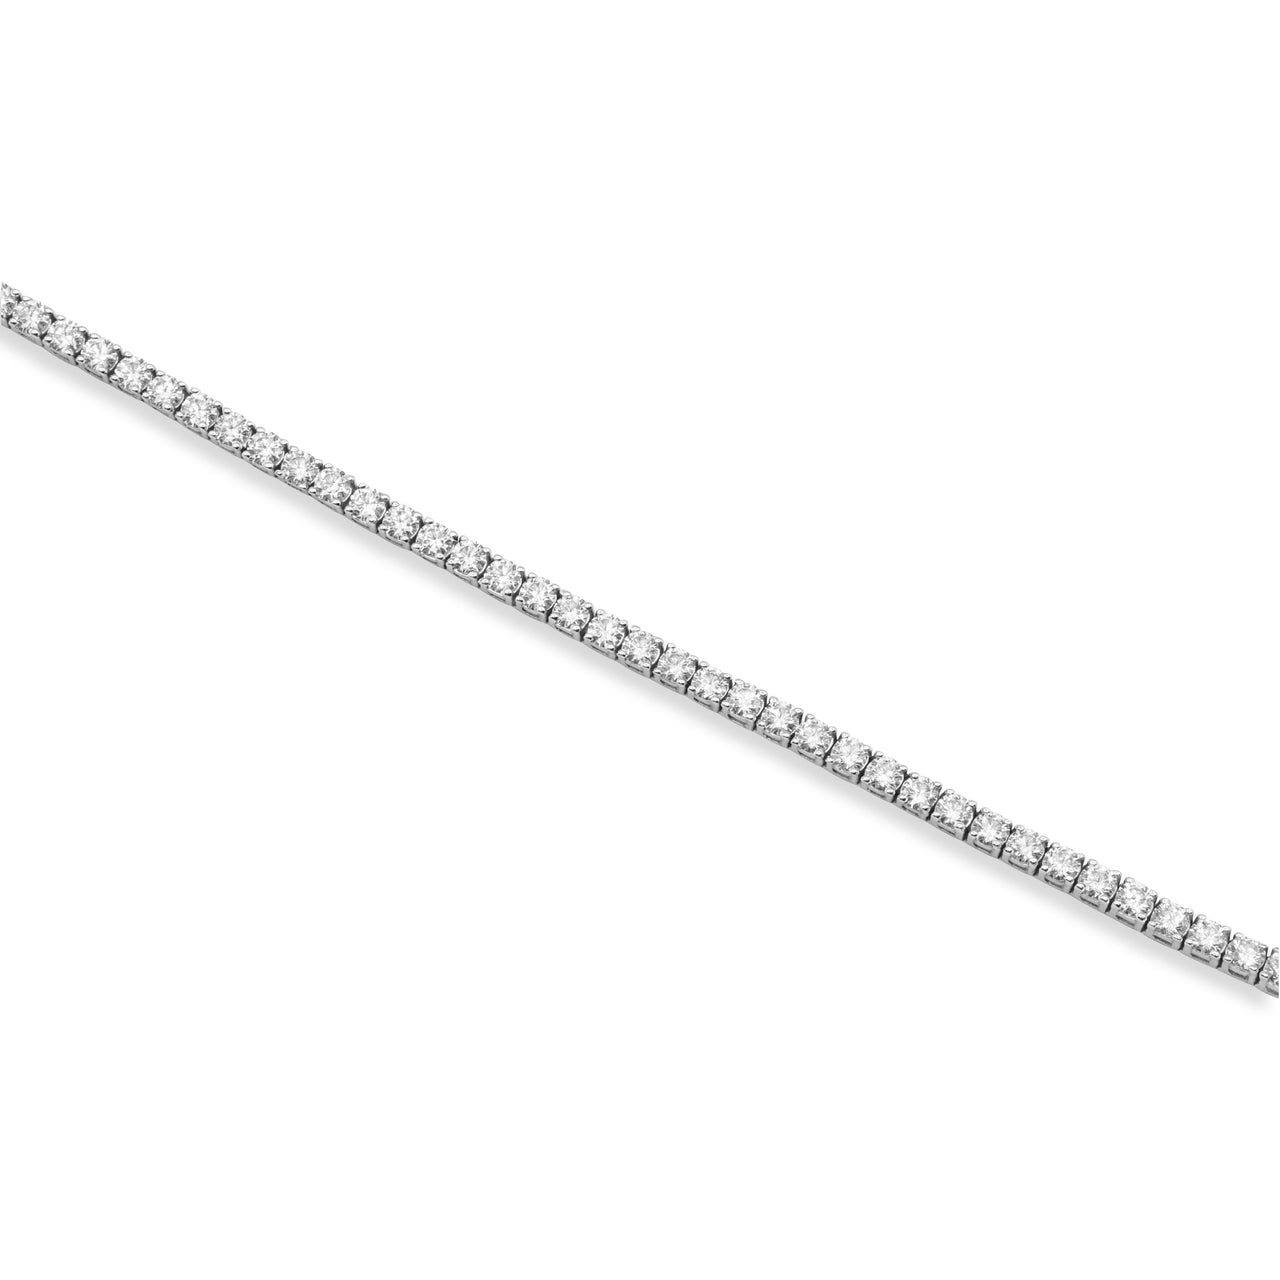 White 14k Tennis Bracelet 9.8 Ctw CVD